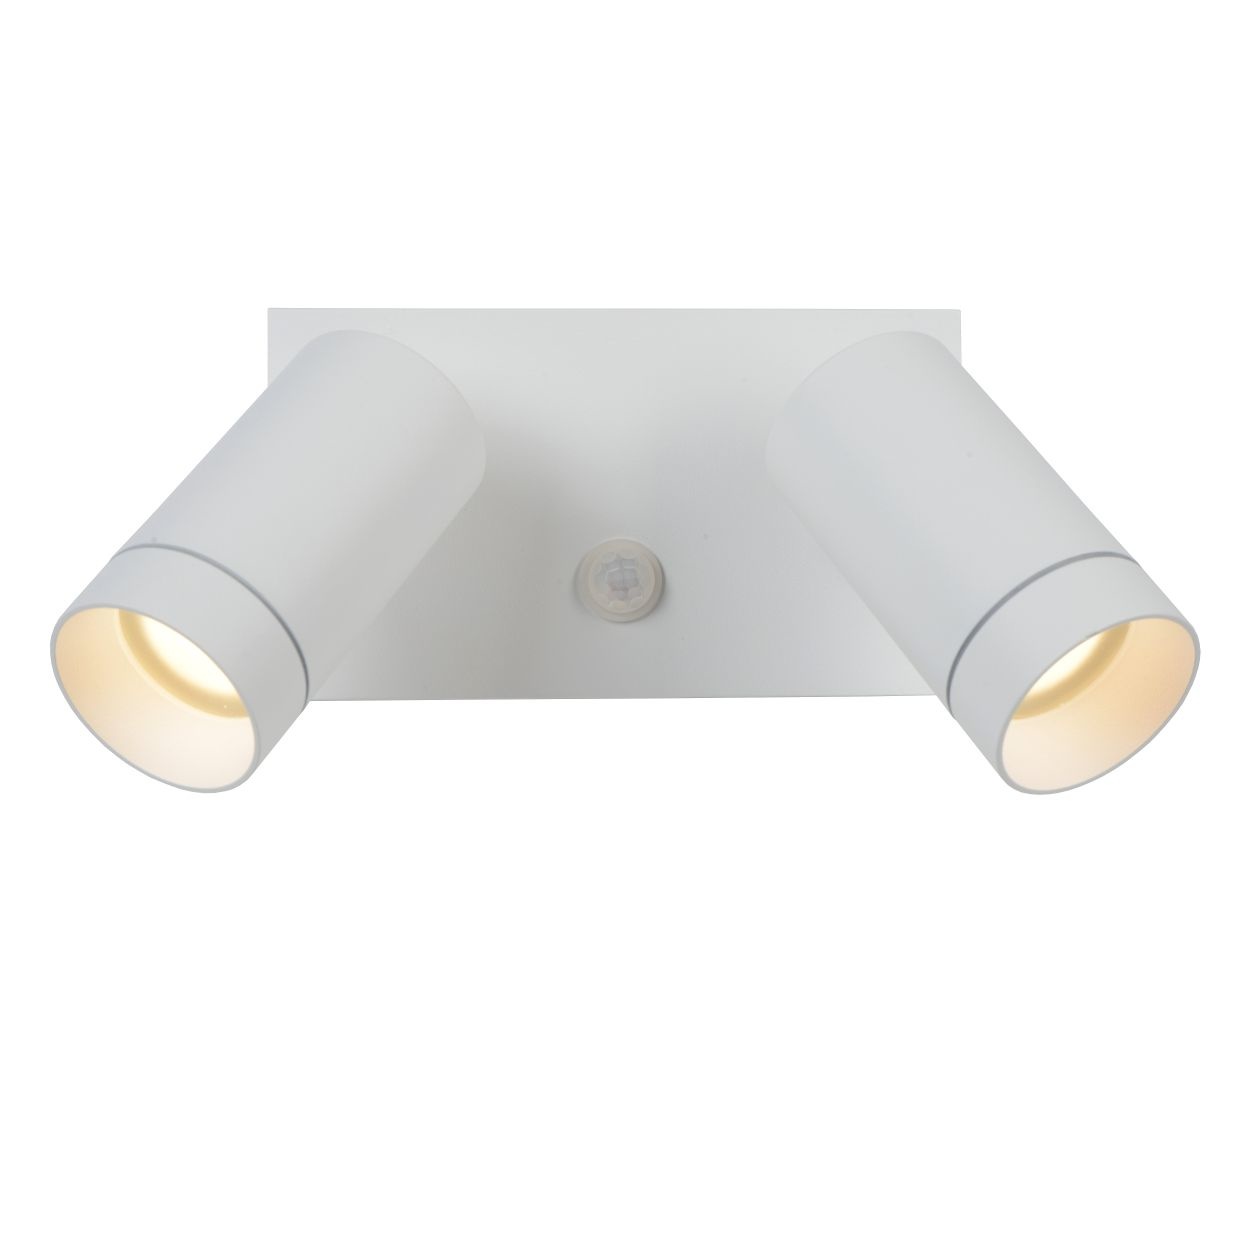 2X 30W SMD Foco LED con Sensor Movimiento,Proyector LED Exterior,Blanco  Calido con Detector PIR de IP65(resistente al agua),Iluminación de Exterior  y Seguridad para Patio,Jardín,LED Luz Exterior con Sensor : :  Iluminación